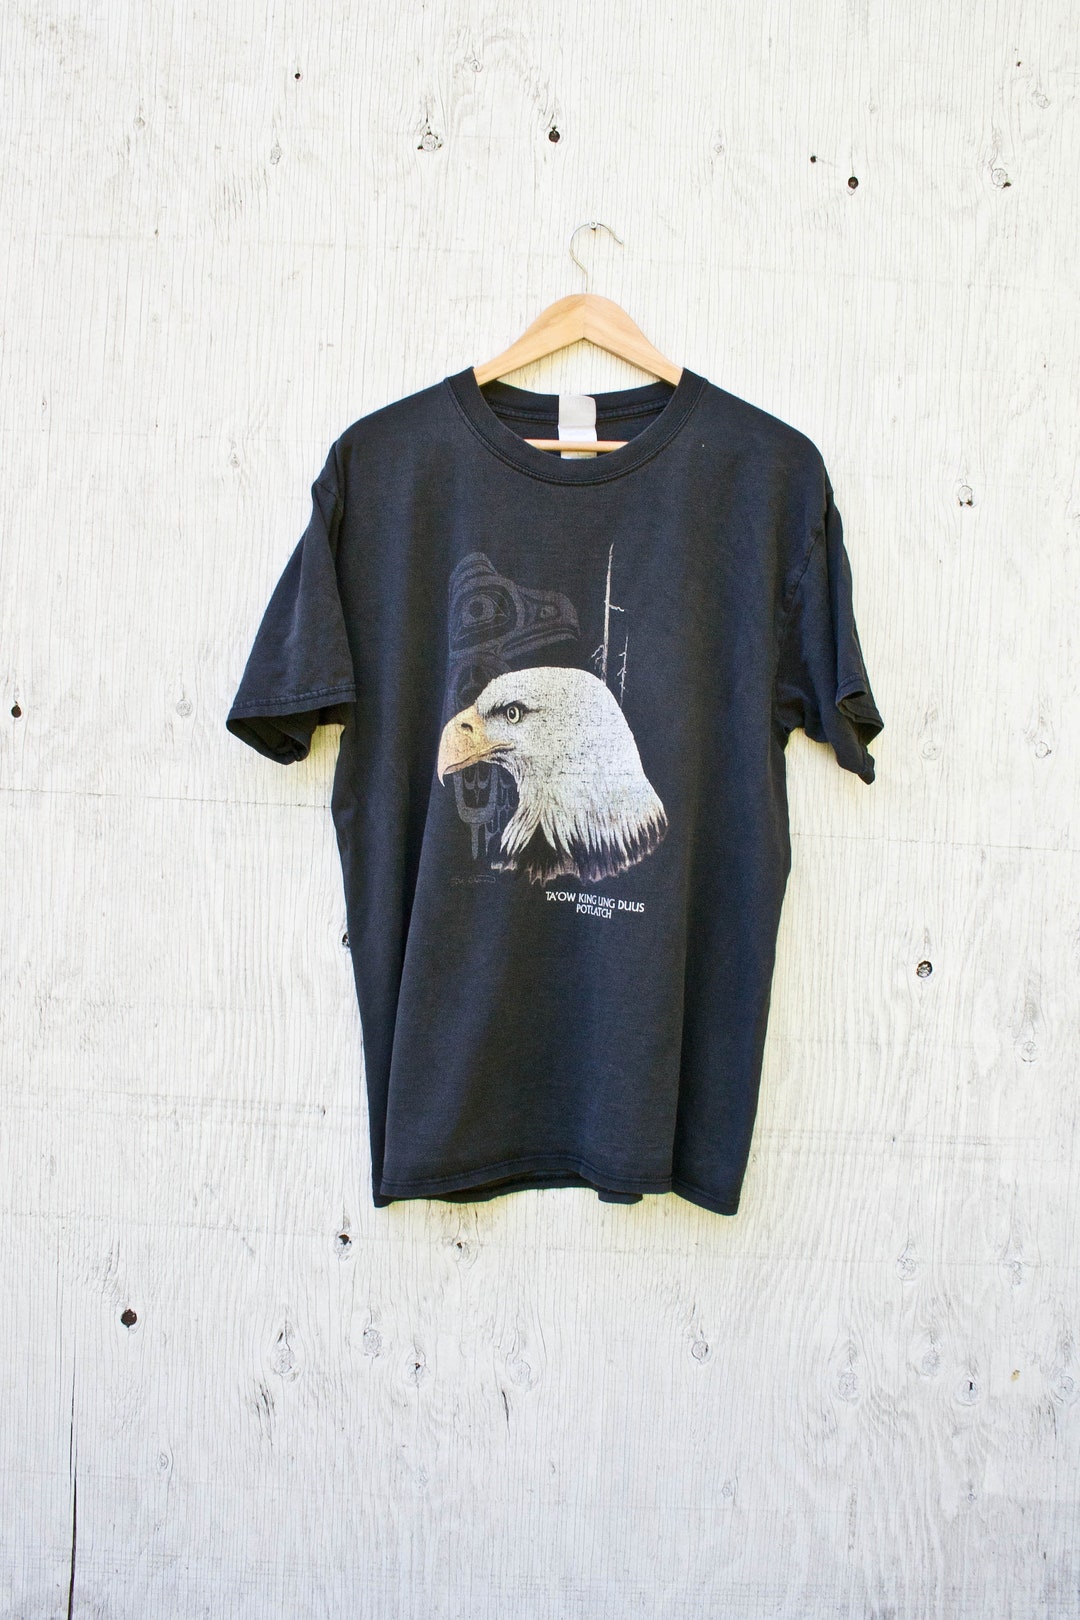 90s Haida Gwaii Eagle Shirt Large Vintage Eagle Tshirt - Etsy